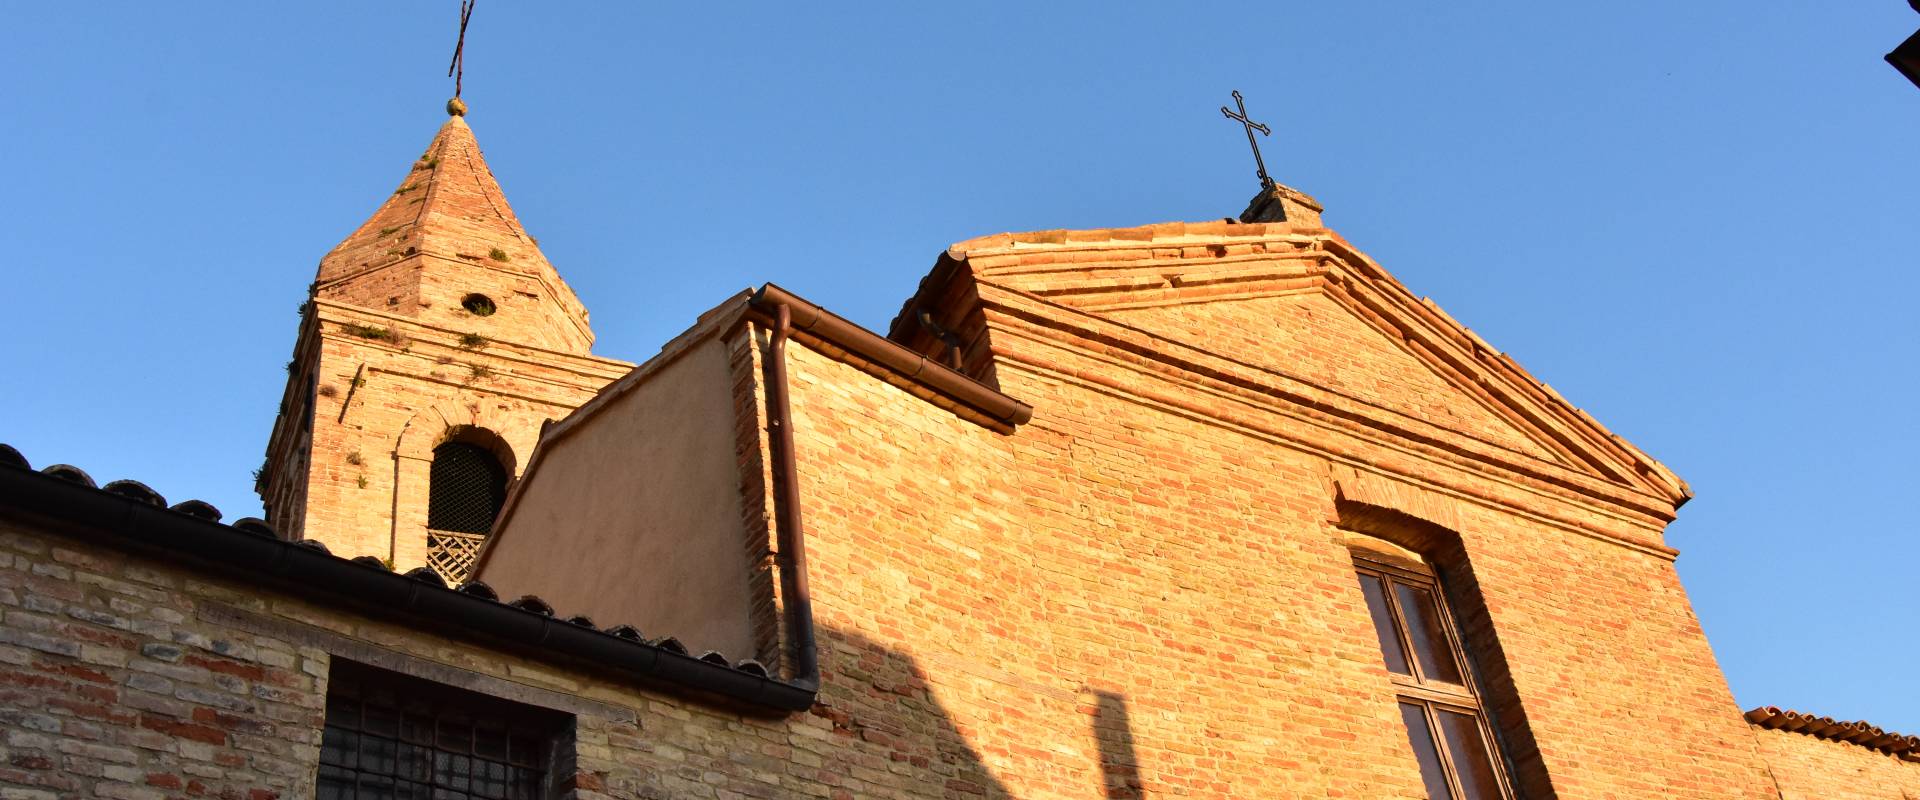 Chiesa delle Clarisse, facciata photo by Daniela Lorenzetti